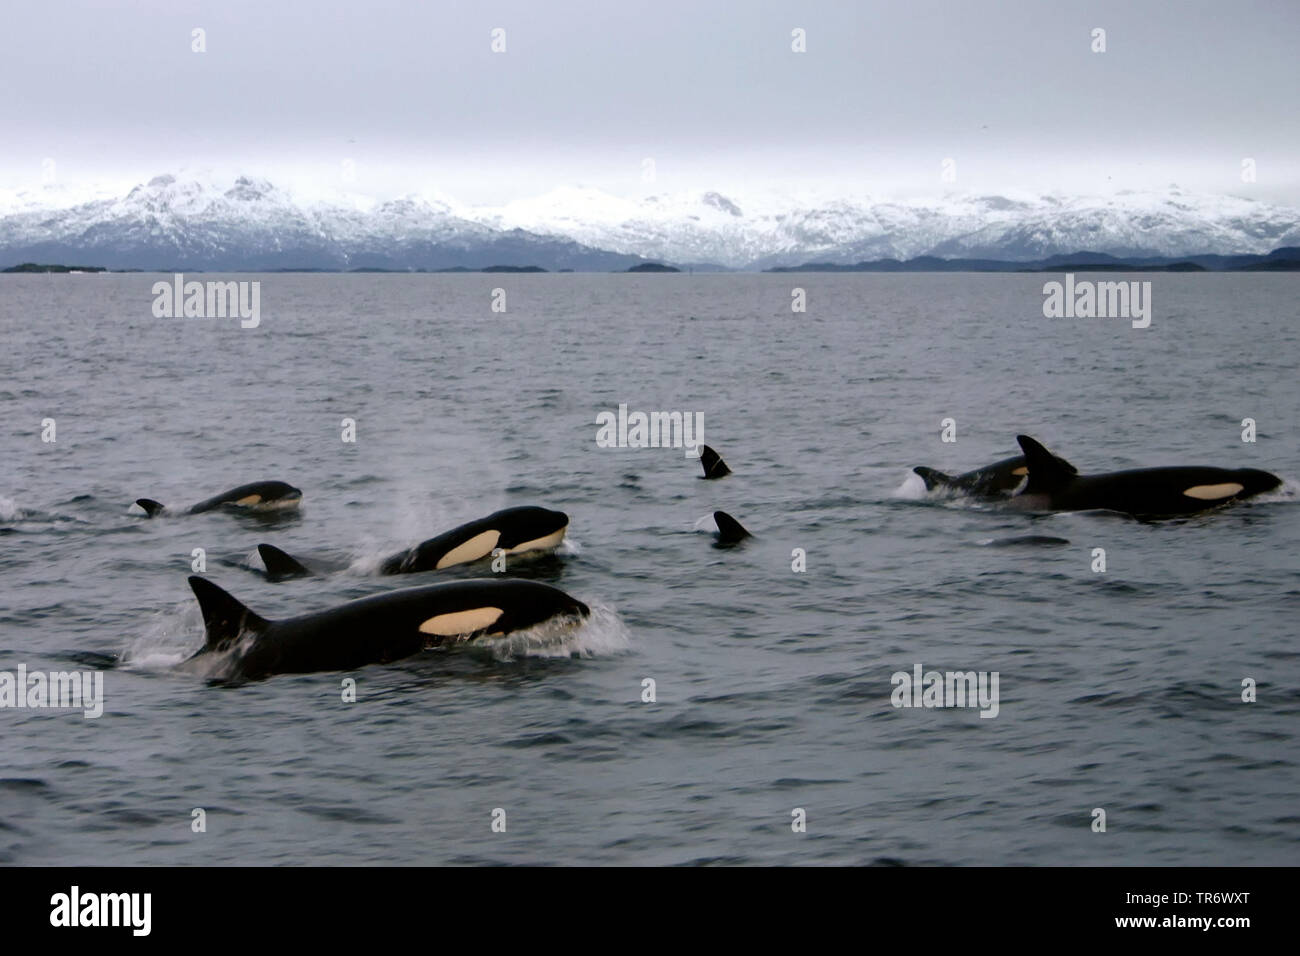 Orca, grand, de l'épaulard (Orcinus orca) grampus, natation orcas, Norvège Banque D'Images